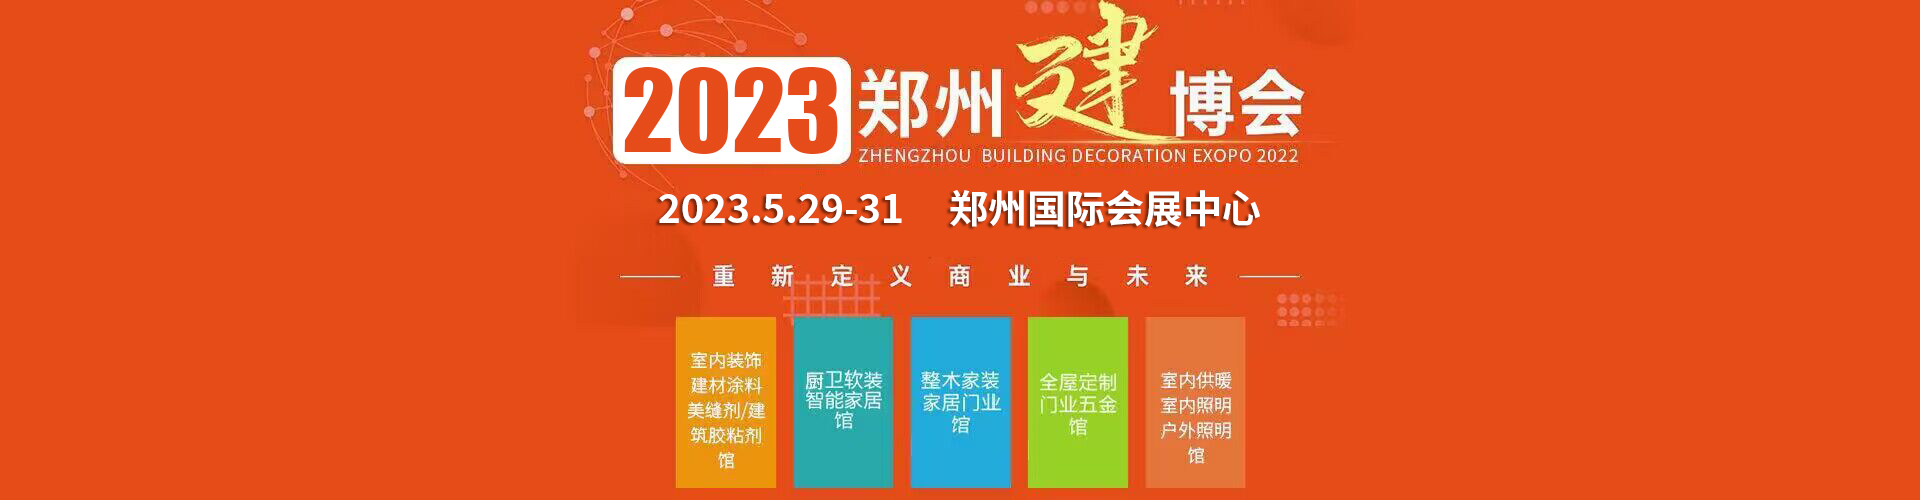 2023郑州定制家居展览会主办单位